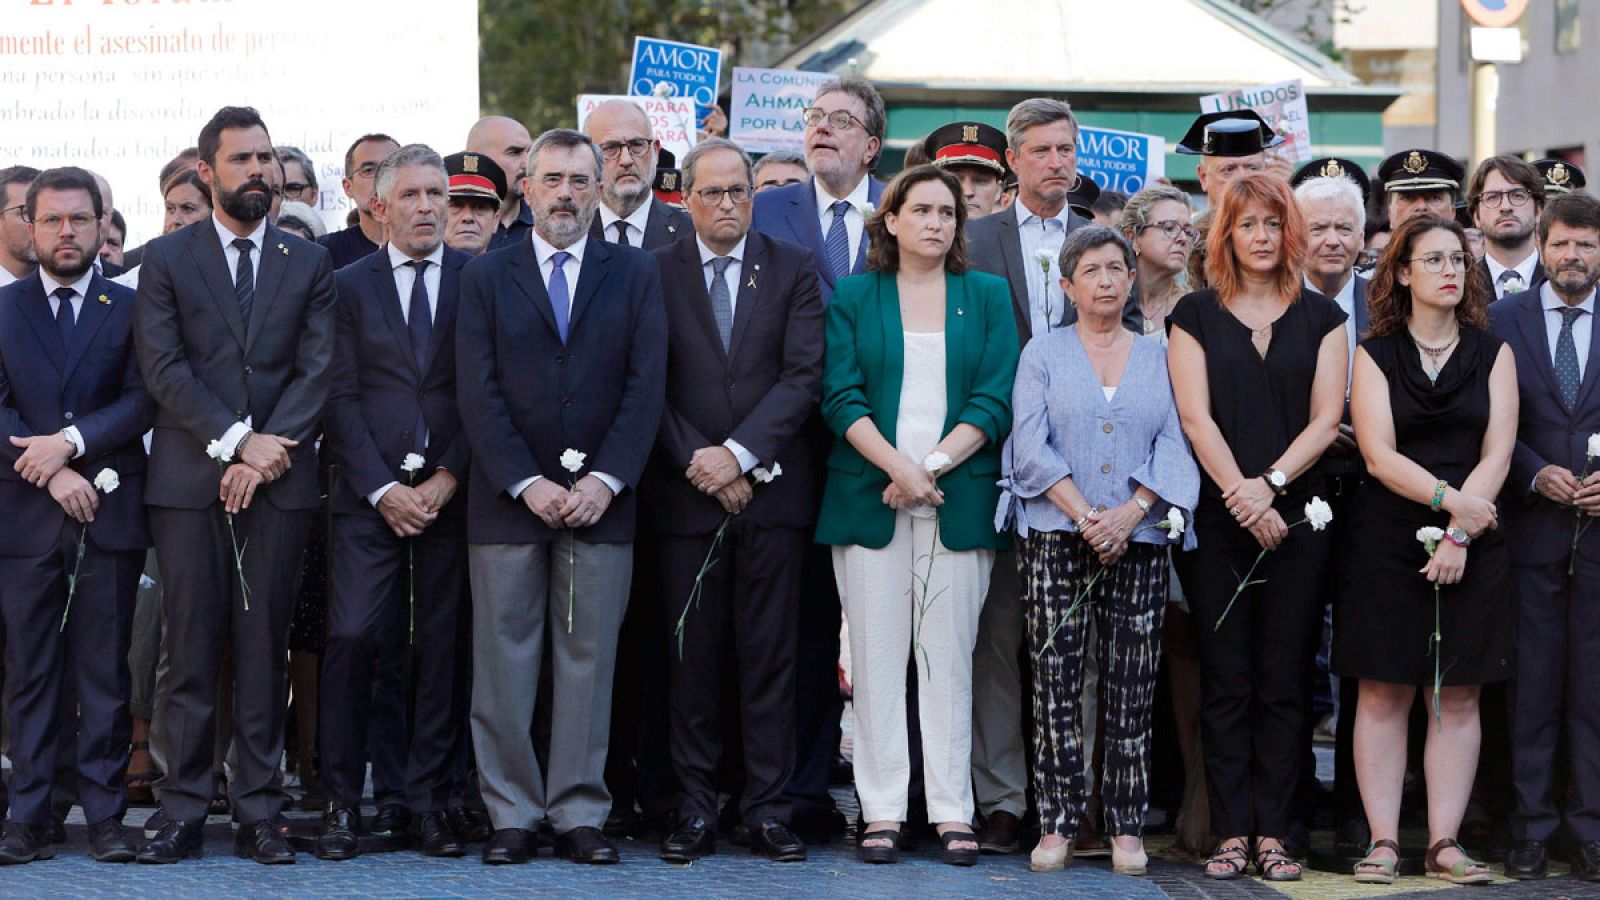 Atentados Barcelona y Cambrils: Los líderes políticos recuerdan a las víctimas de los atentados